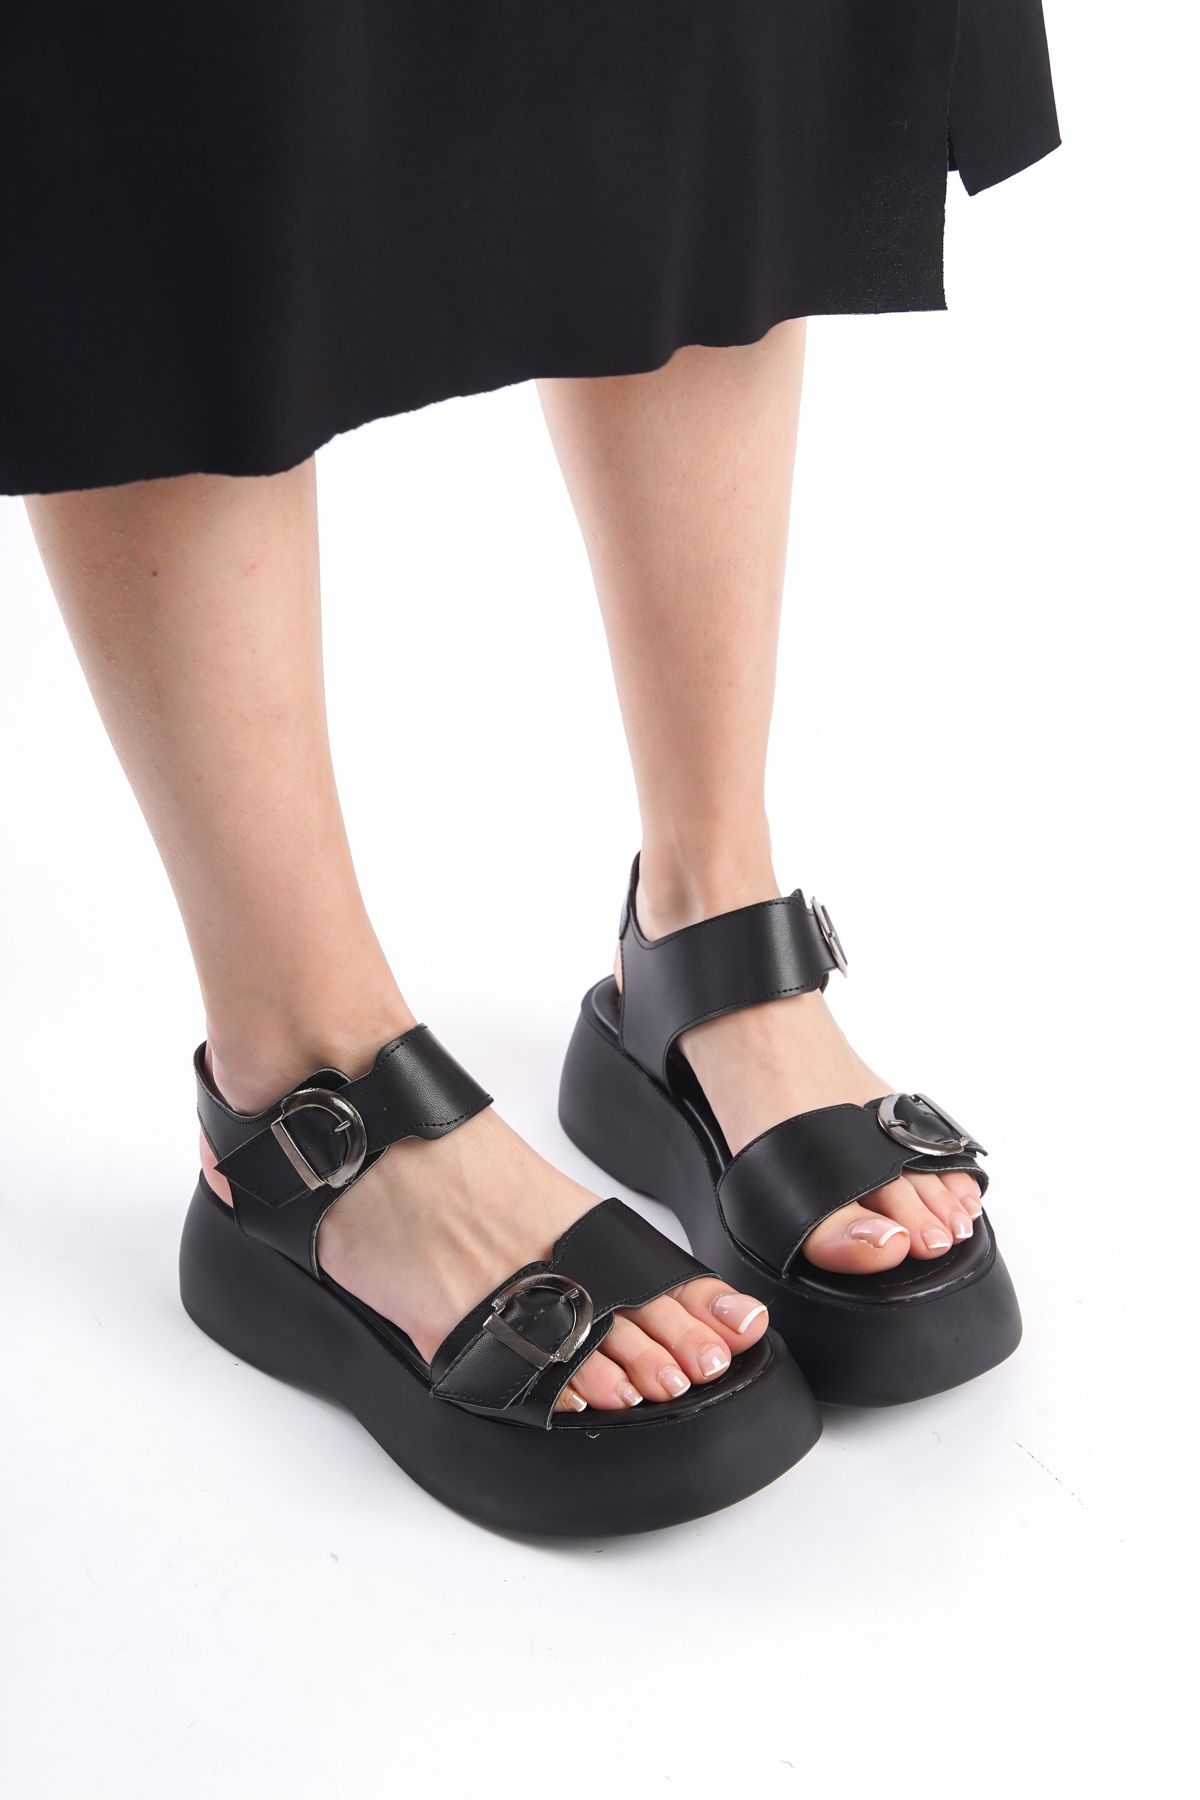 Limeo Siyah Yüksek Taban Şeritli Çift Tokalı Kalın Şeritli Kadın Dolgu Topuklu Yazlık Sandalet